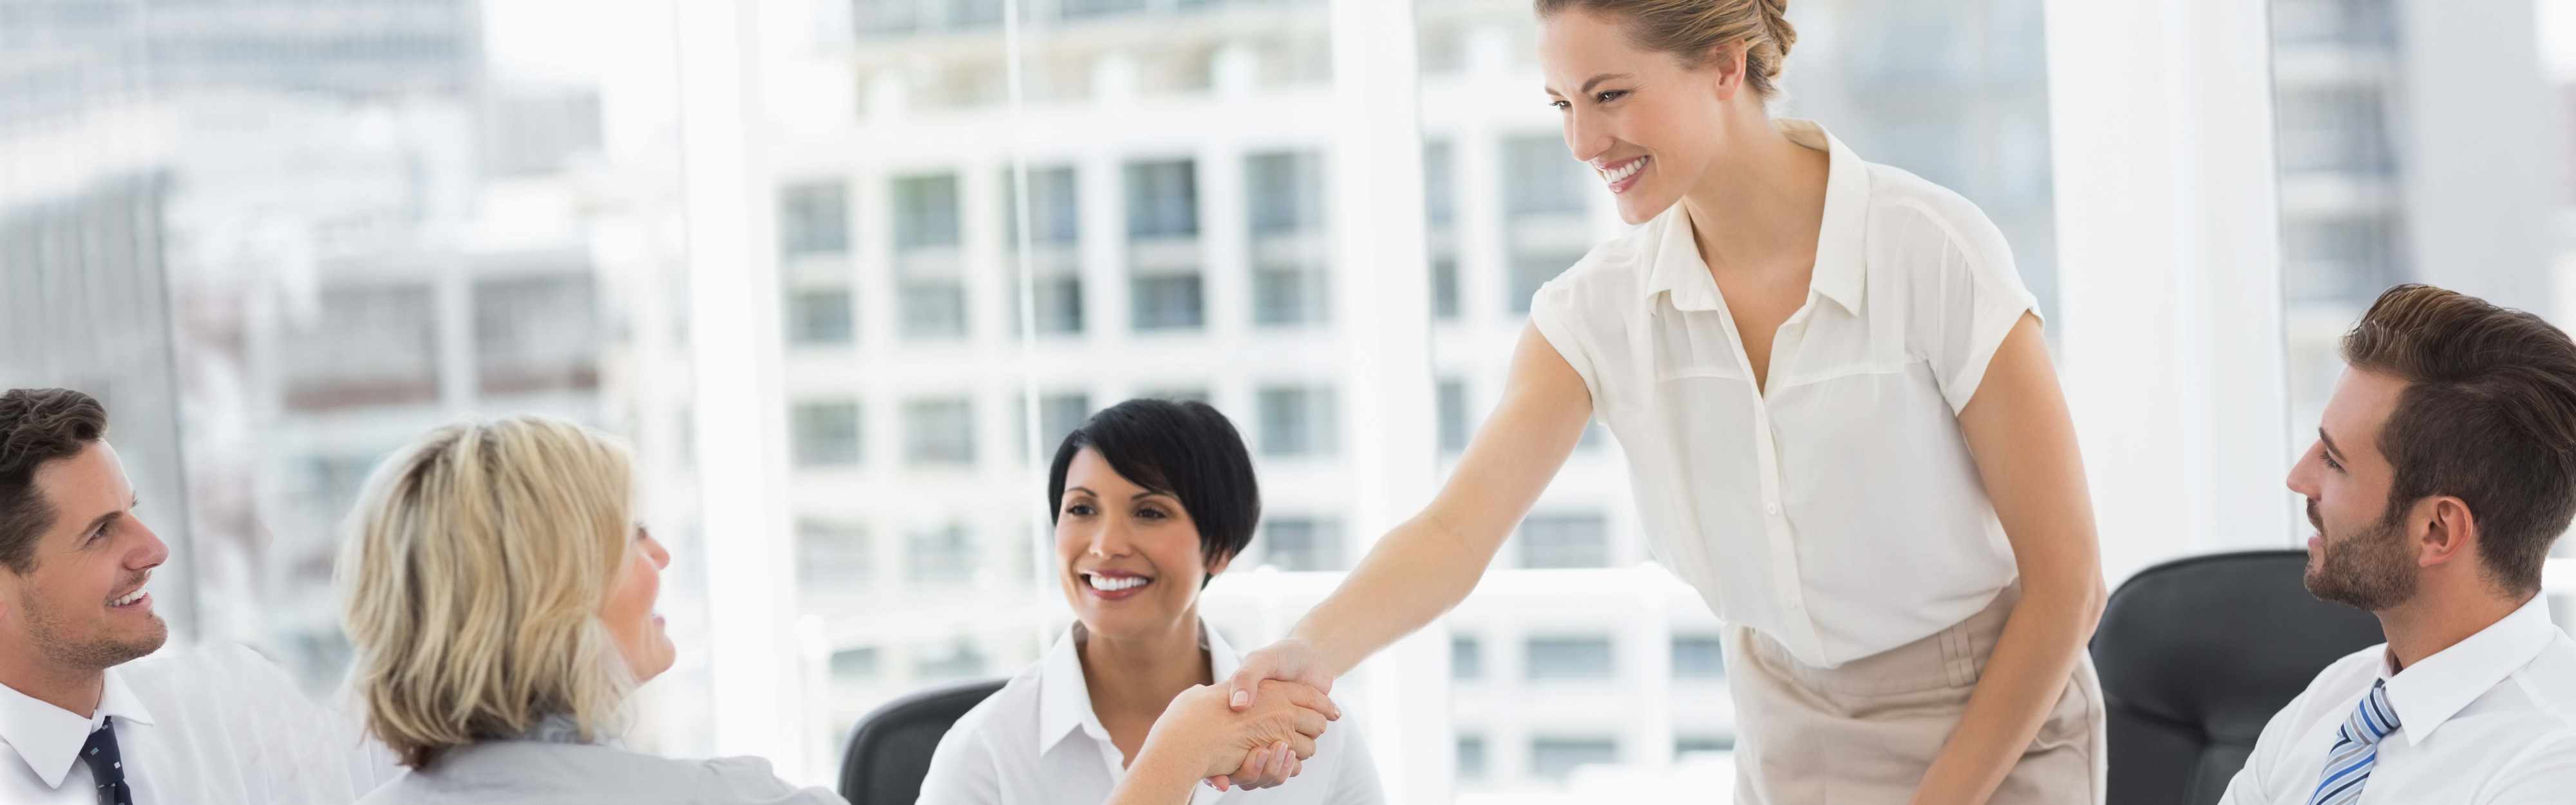 Geschäftsfrauen besiegeln einen Vertrag per Handschlag.